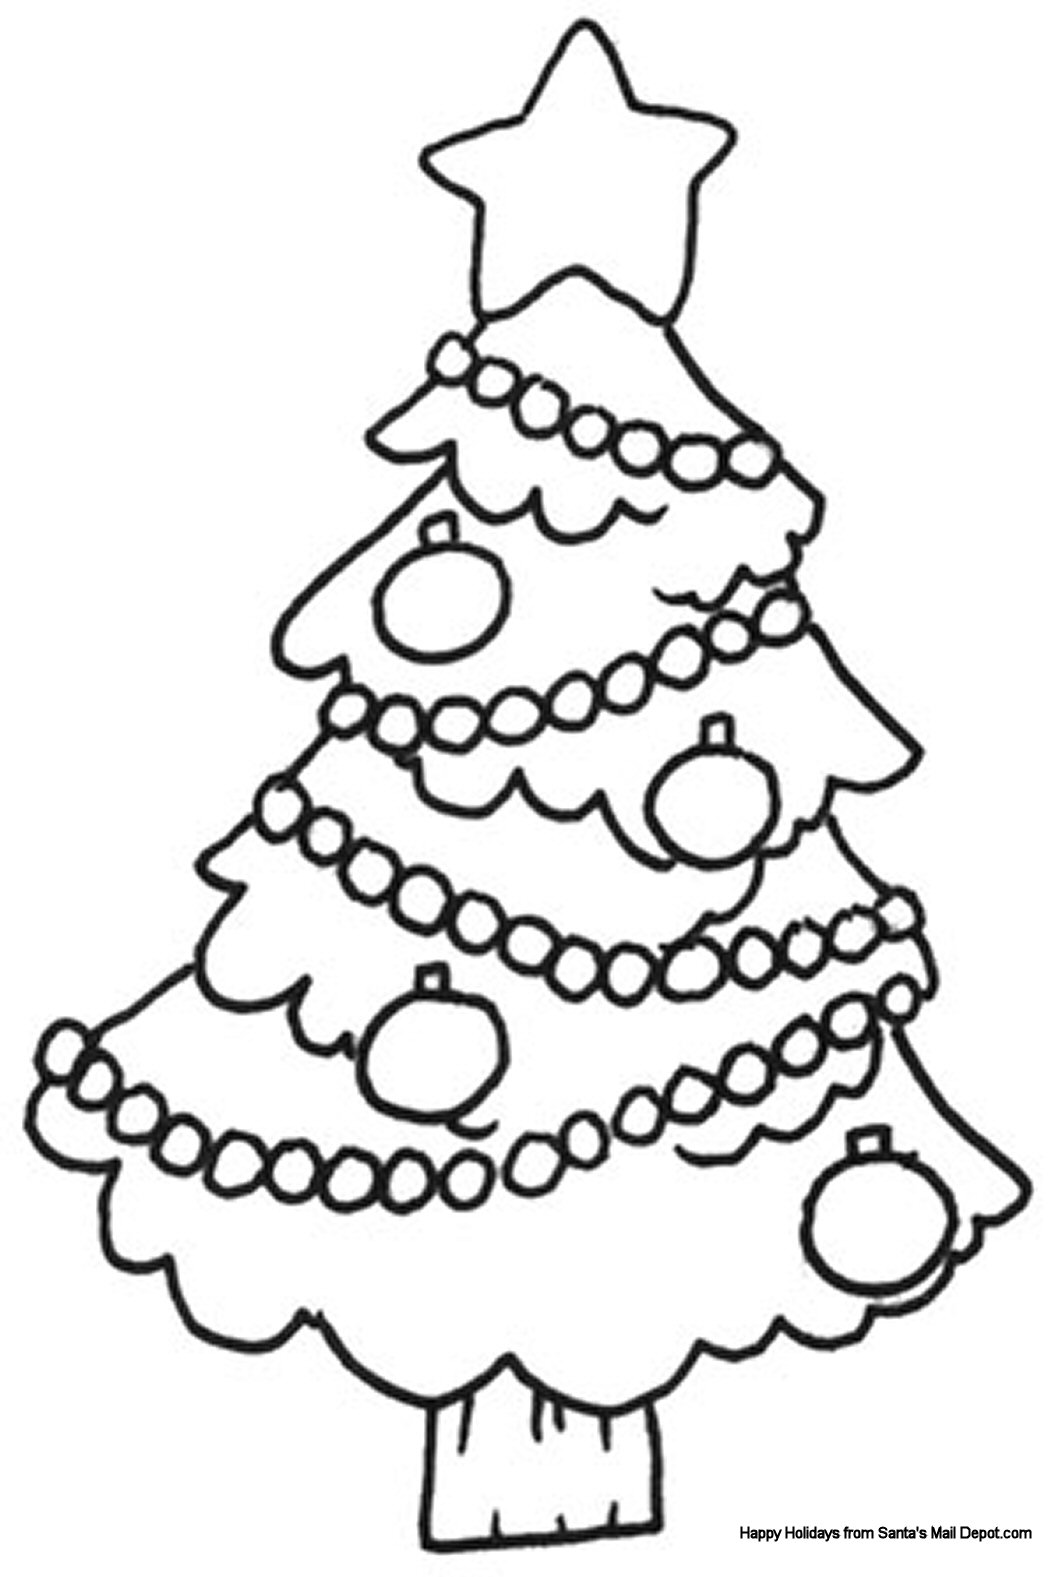 Christmas tree Image